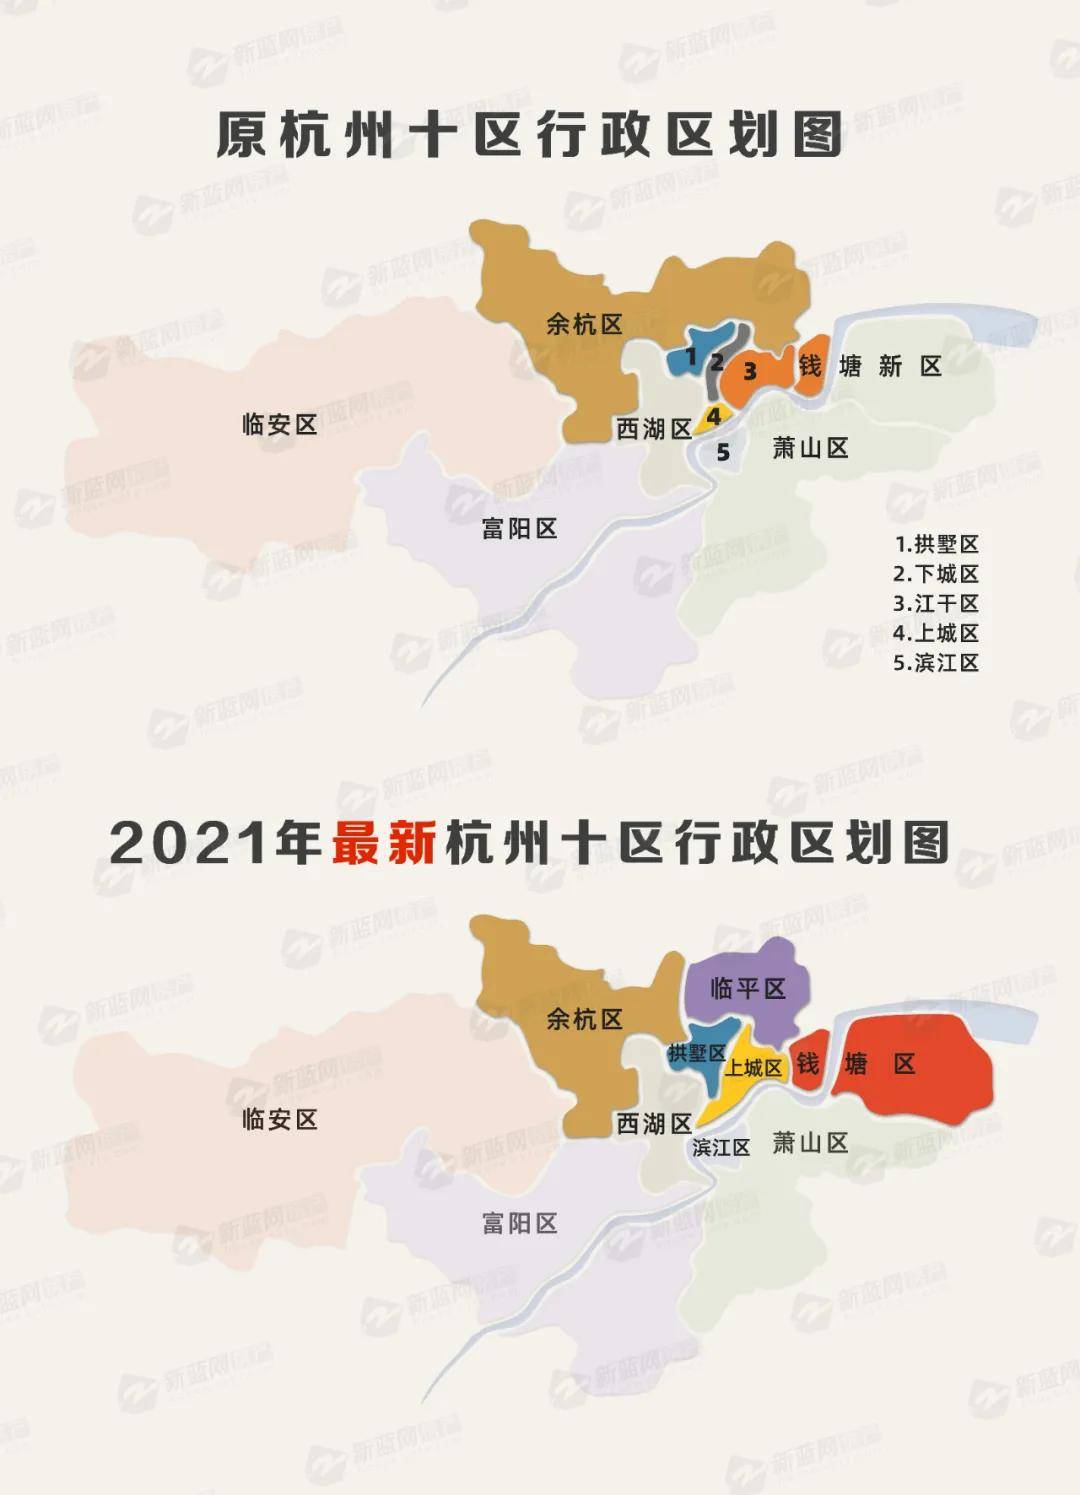 2017年8月,临安撤市划区,成为杭州第十区;2014年12月,富阳撤市划区